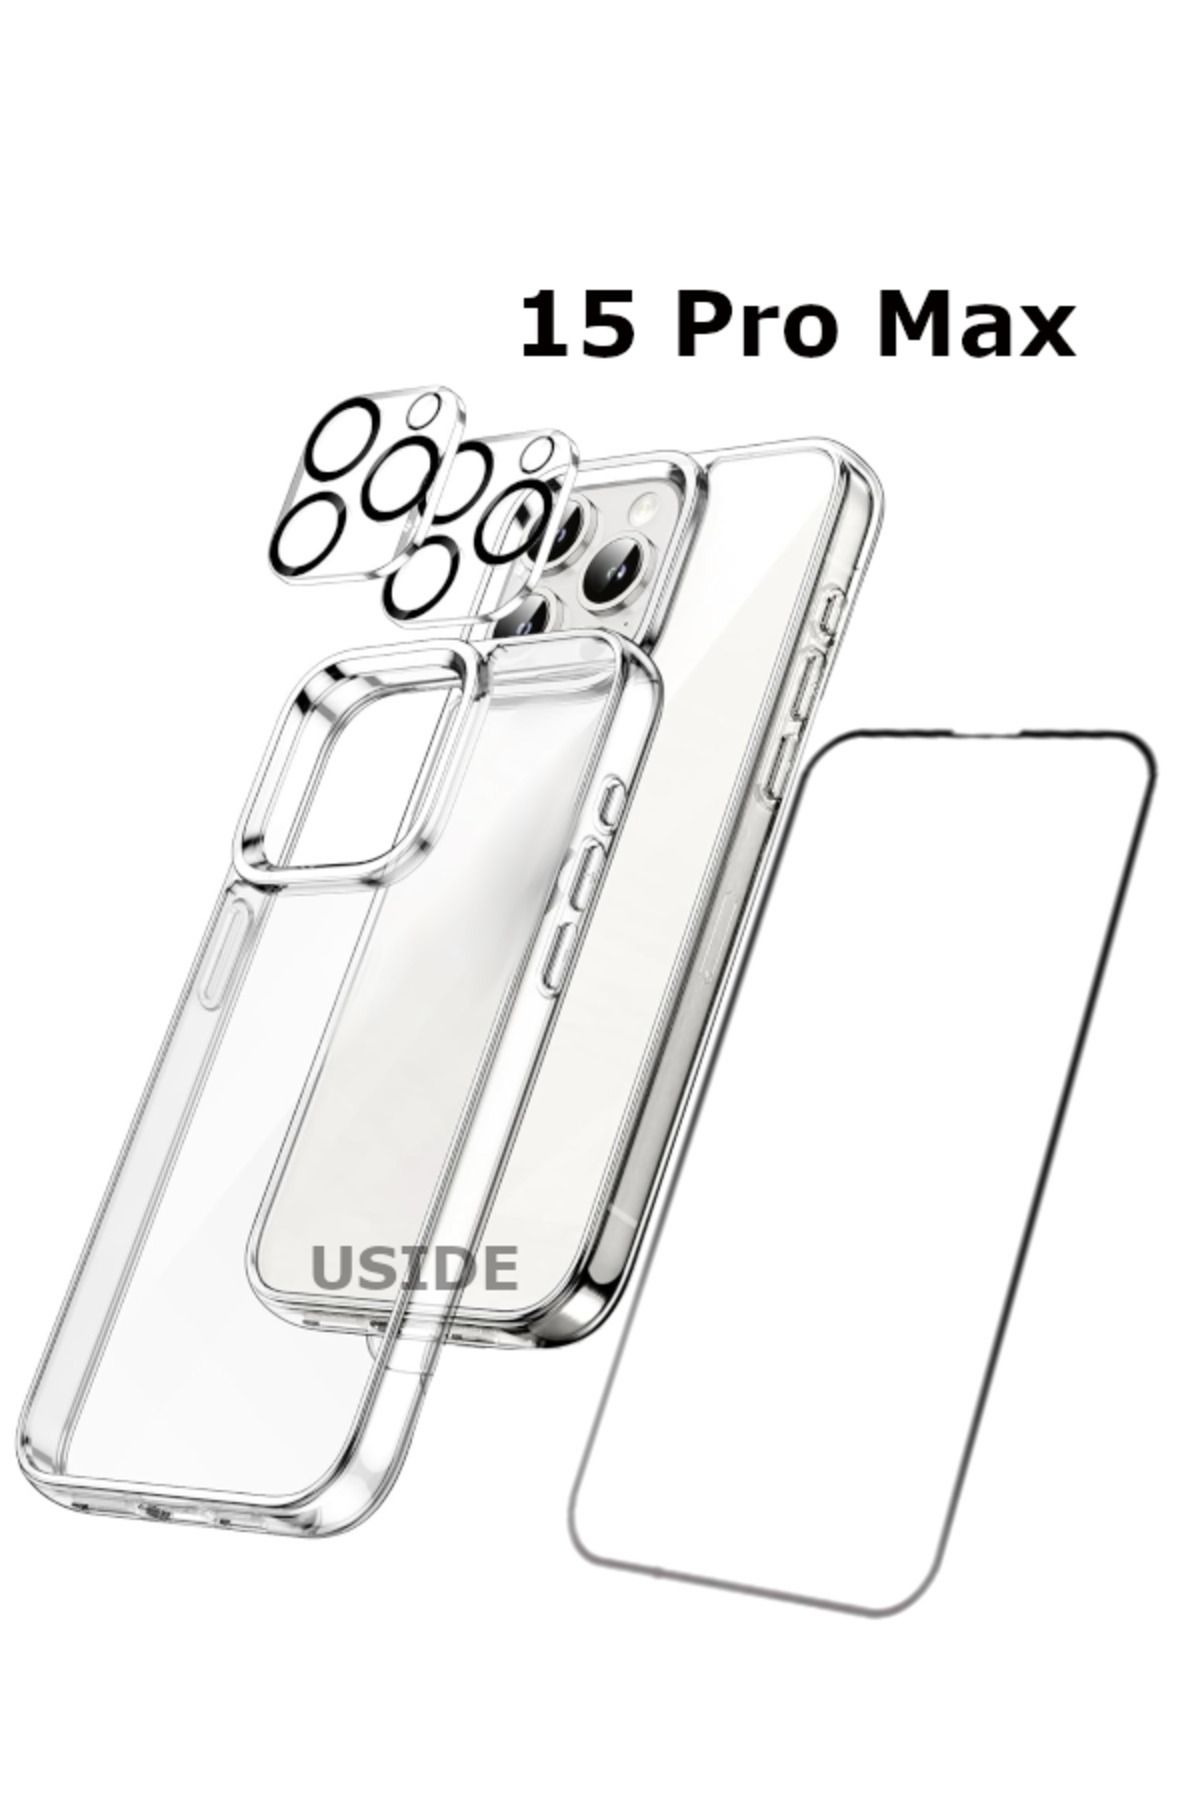 USIDE iPhone 15 Promax Uyumlu Şeffaf Kılıf+ 5D Ekran Koruyucu+ Kamera Koruyucu 360°tam Koruma 4in1 Set